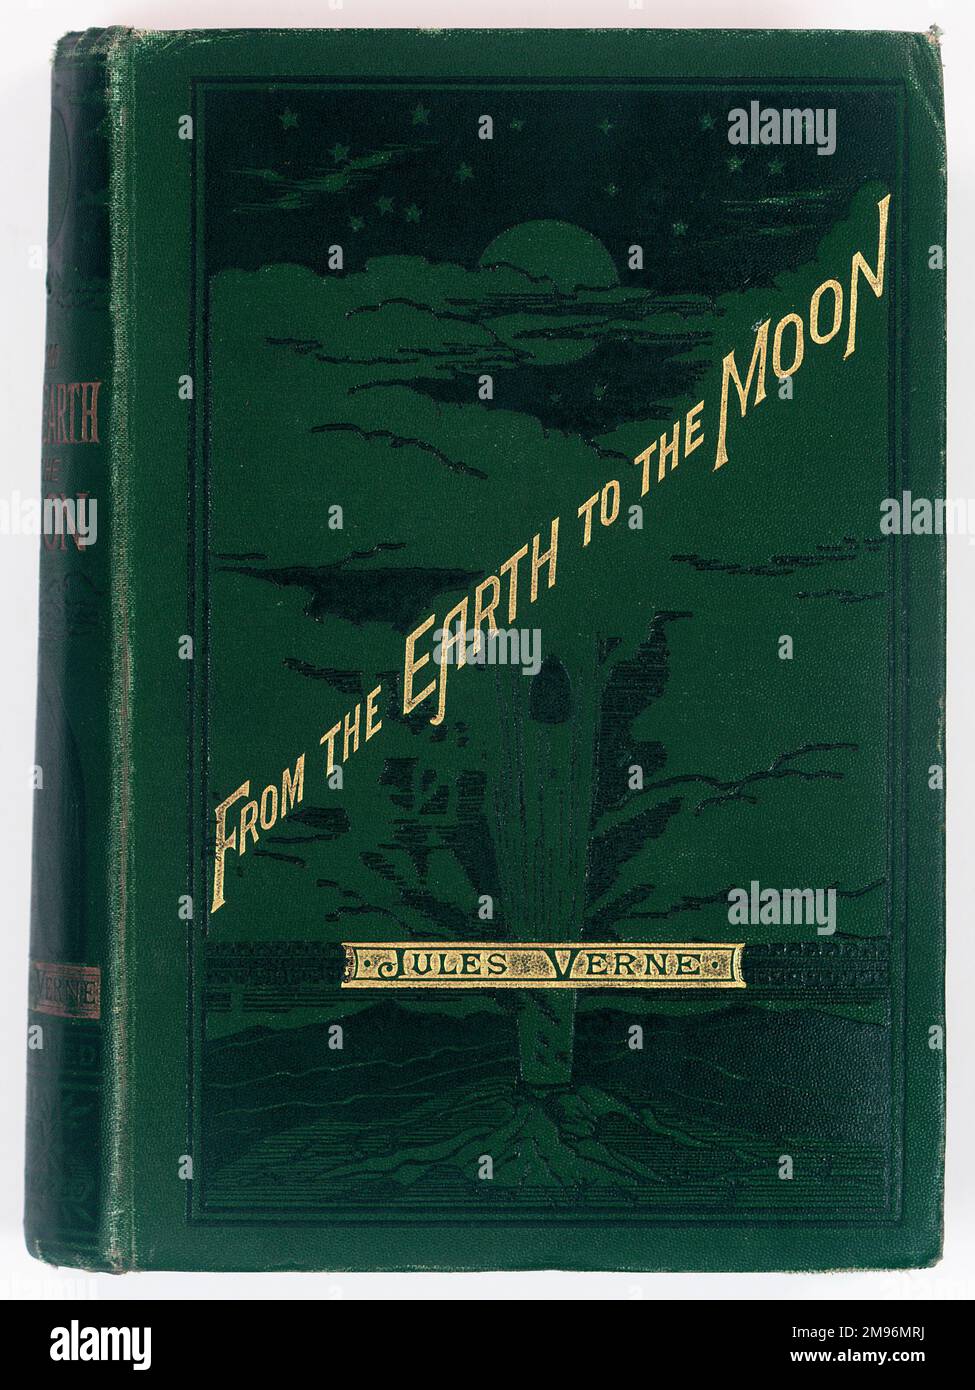 Couverture de livre, de la Terre à la Lune : direct en 97 heures 20 minutes et un voyage autour de lui, par Jules Verne, Londres : Sampson Low, Marston, Searle & Rivington, 1888. Banque D'Images